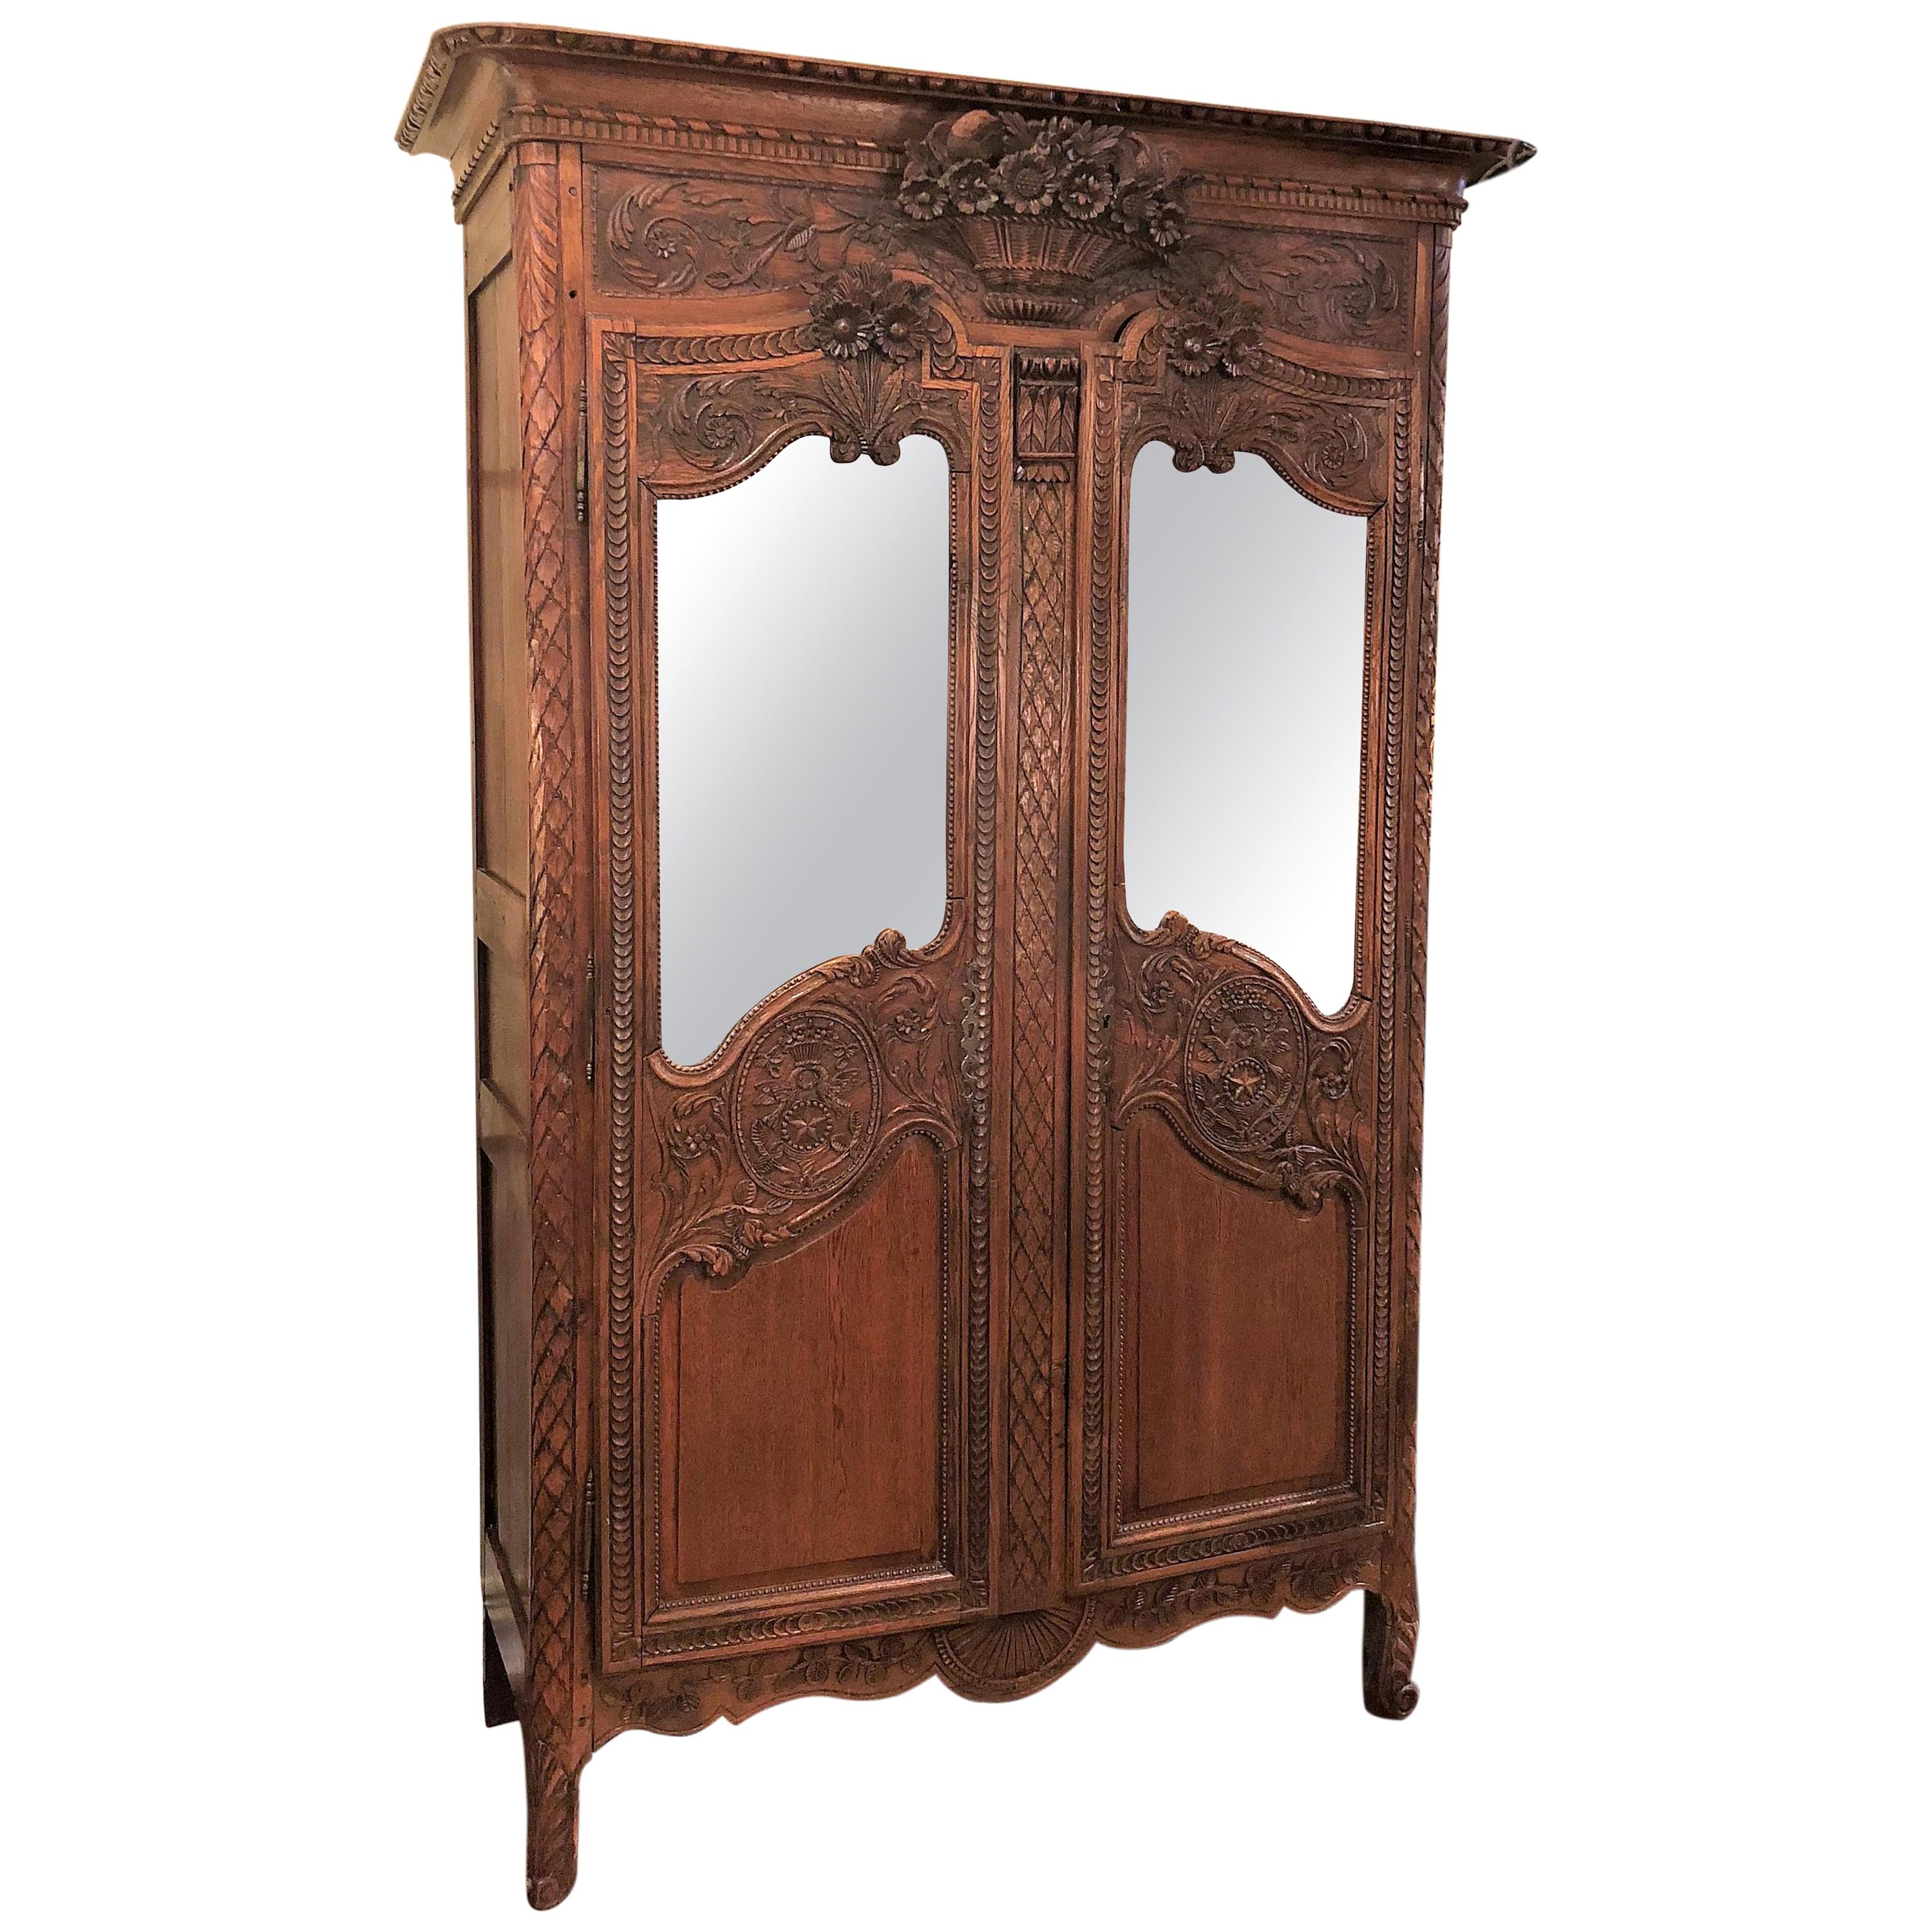 Ancienne armoire française en orme sculpté avec portes en miroir biseautées